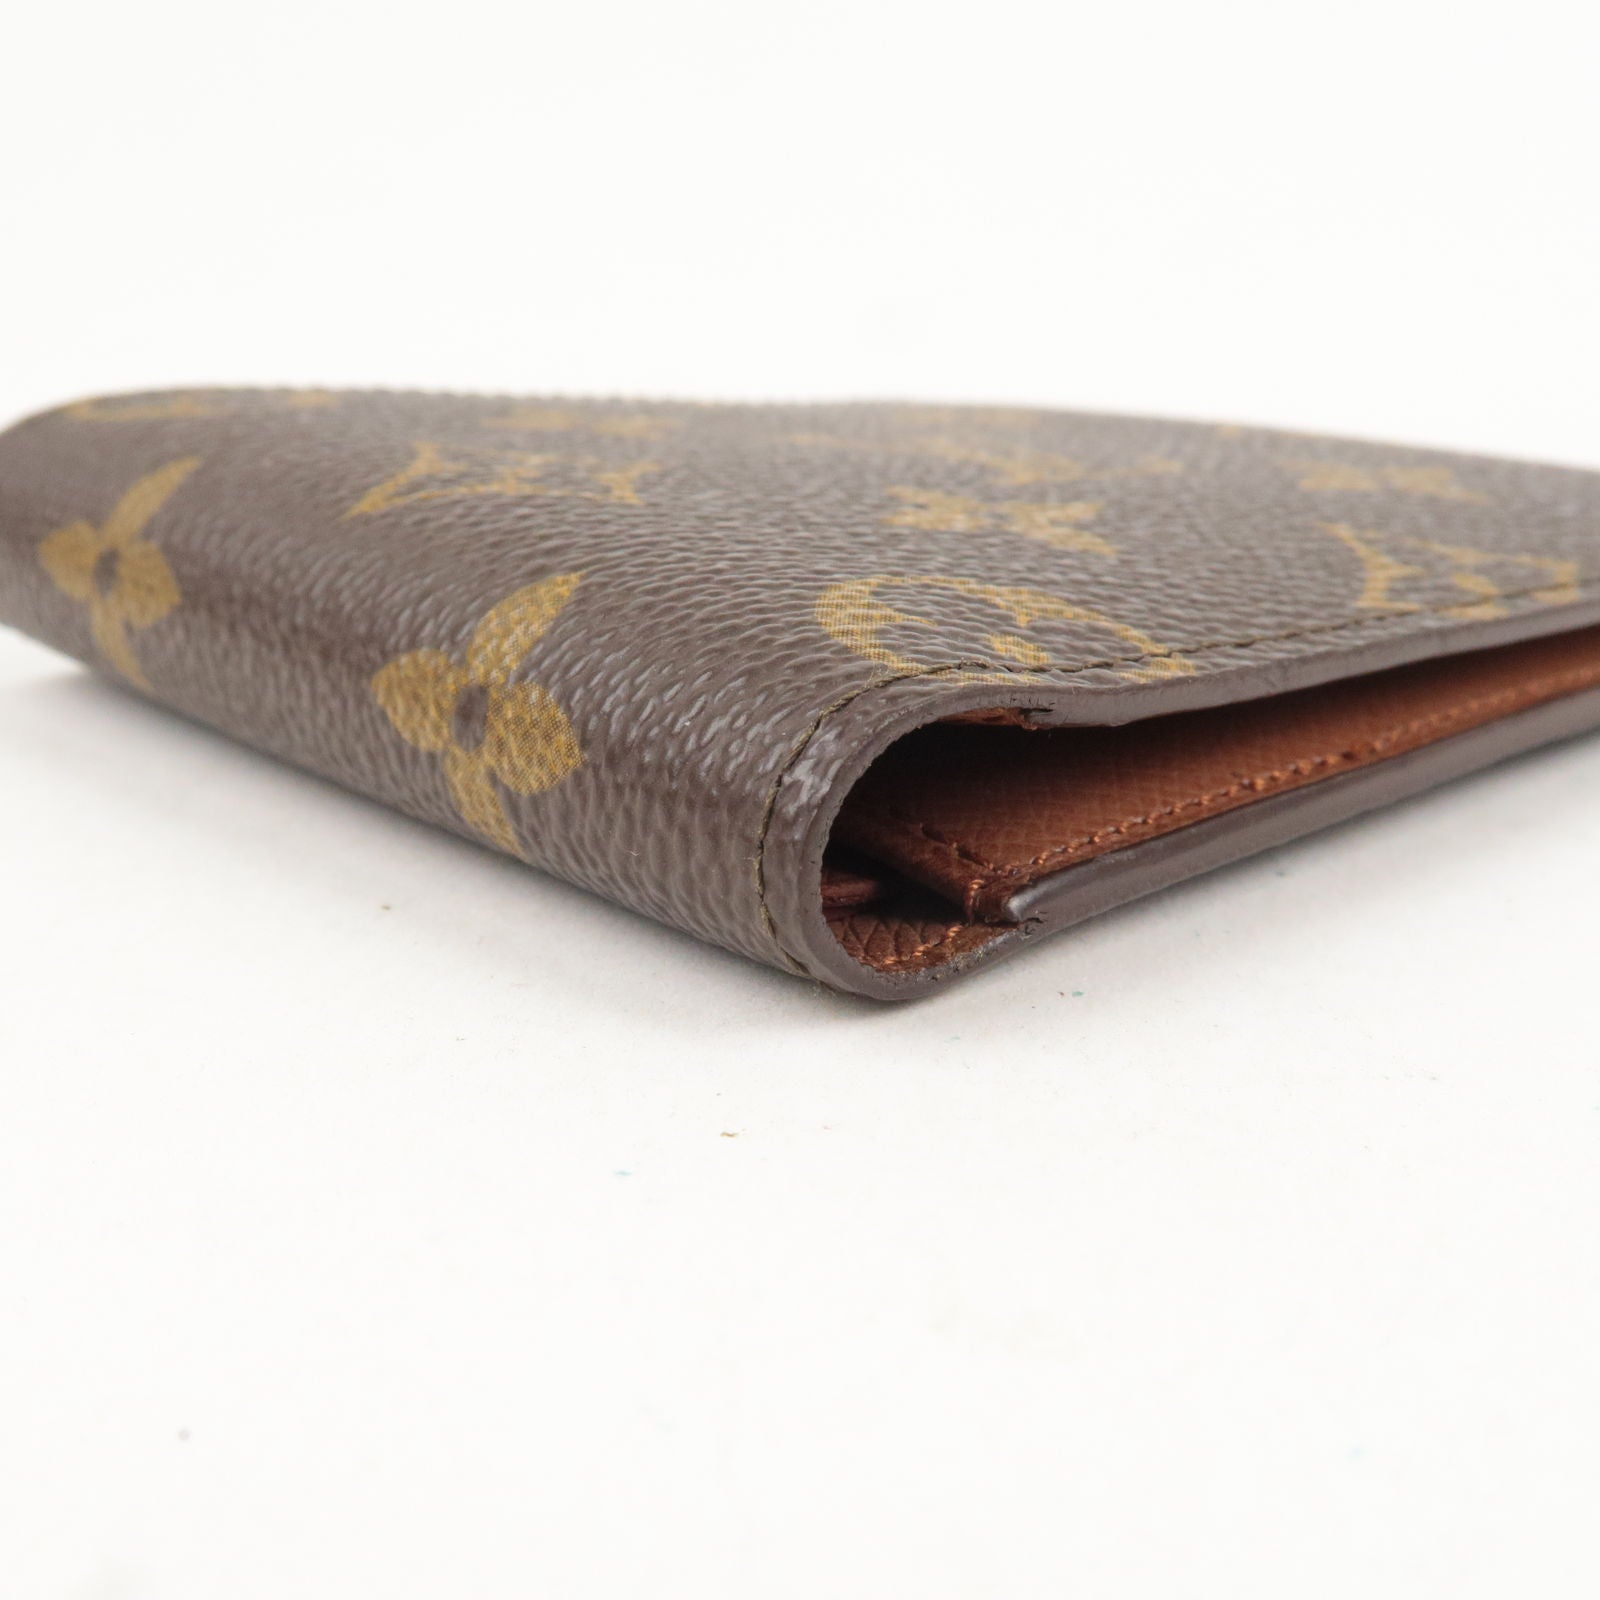 Shop Louis Vuitton MONOGRAM Multiple wallet (M60895) by Sincerity_m639